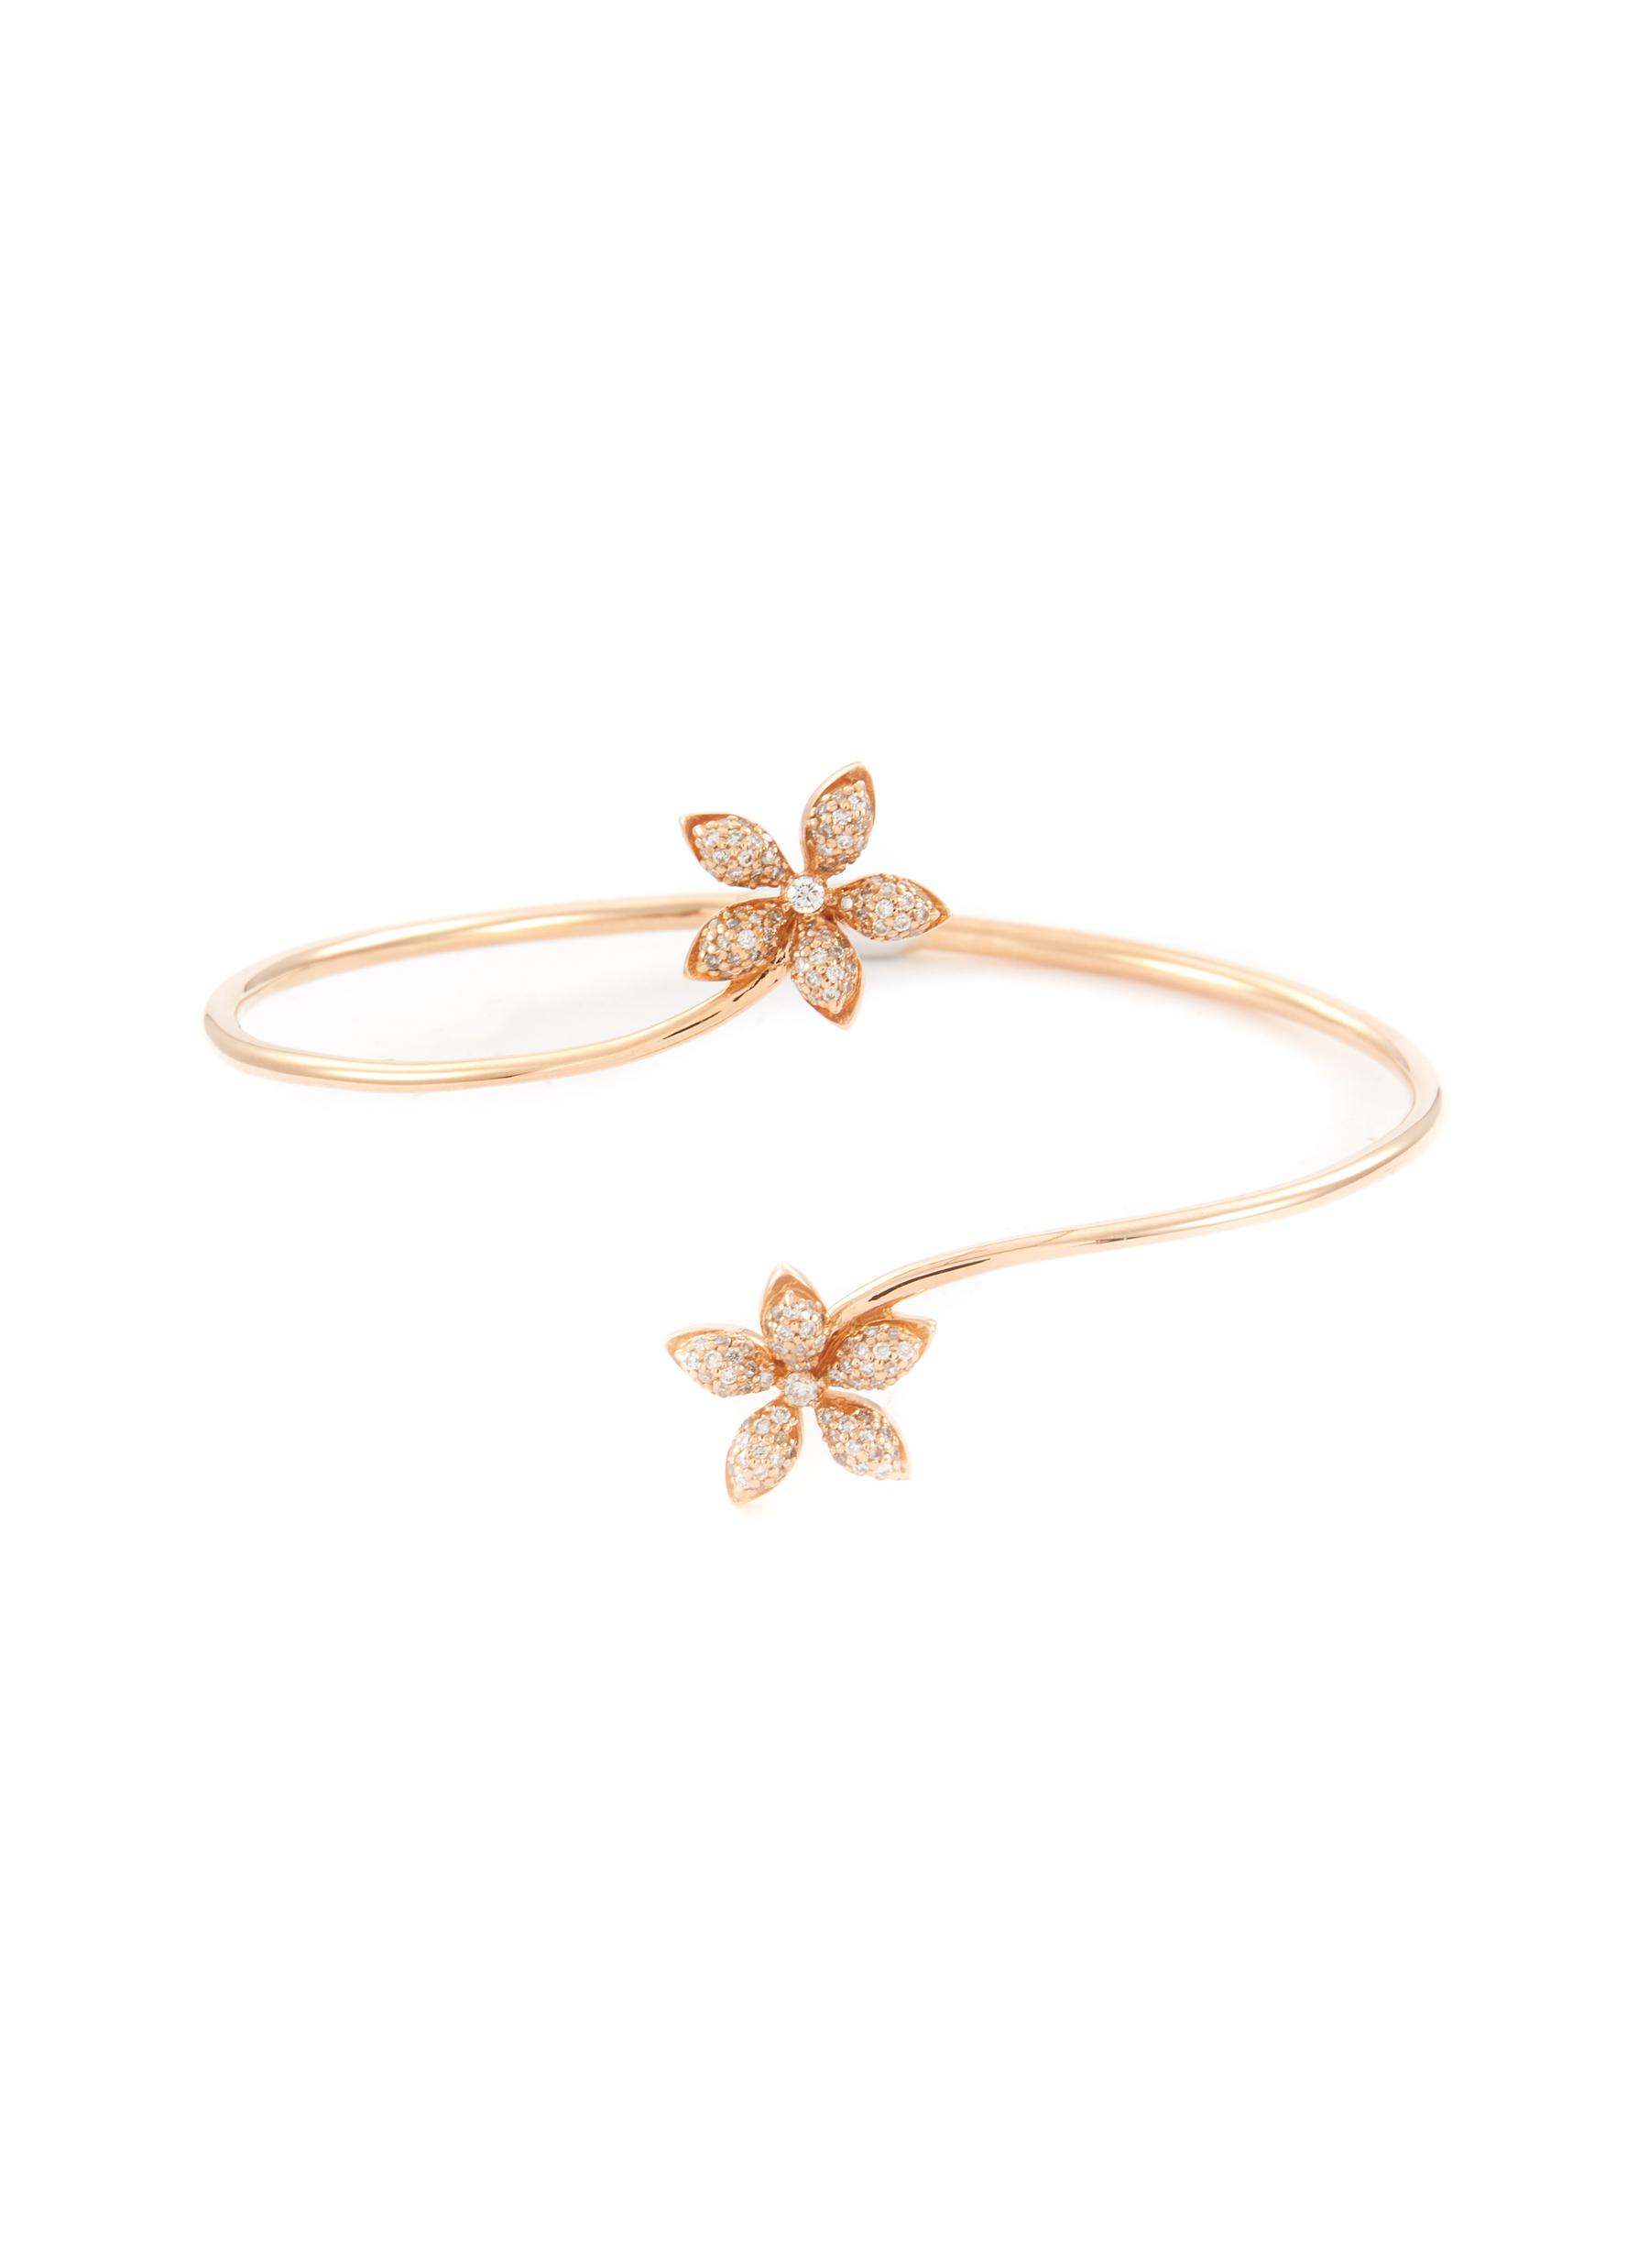 BEE GODDESS 'Apple Seed' diamond 14k rose gold bracelet